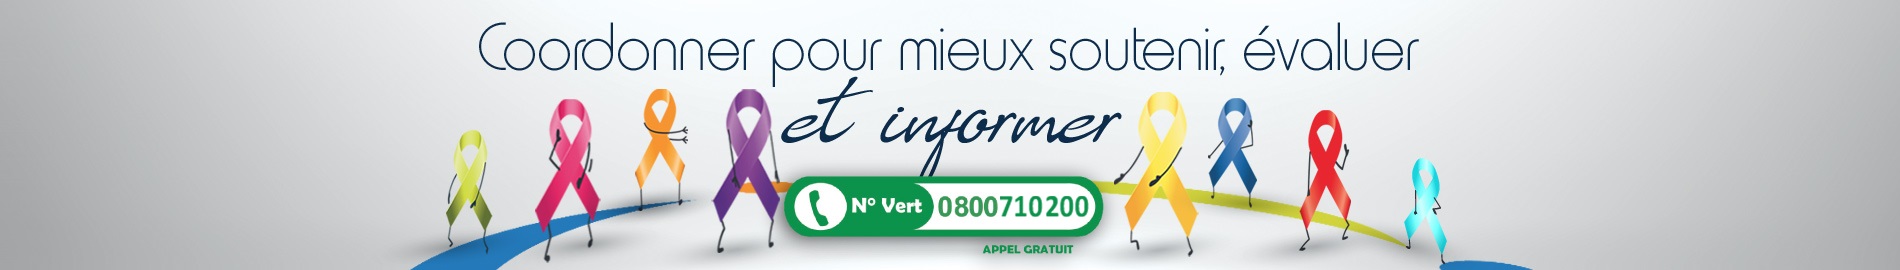 Contact ACTC en Corrèze, Creuse et Haute-Vienne - Numéro vert bandeau image